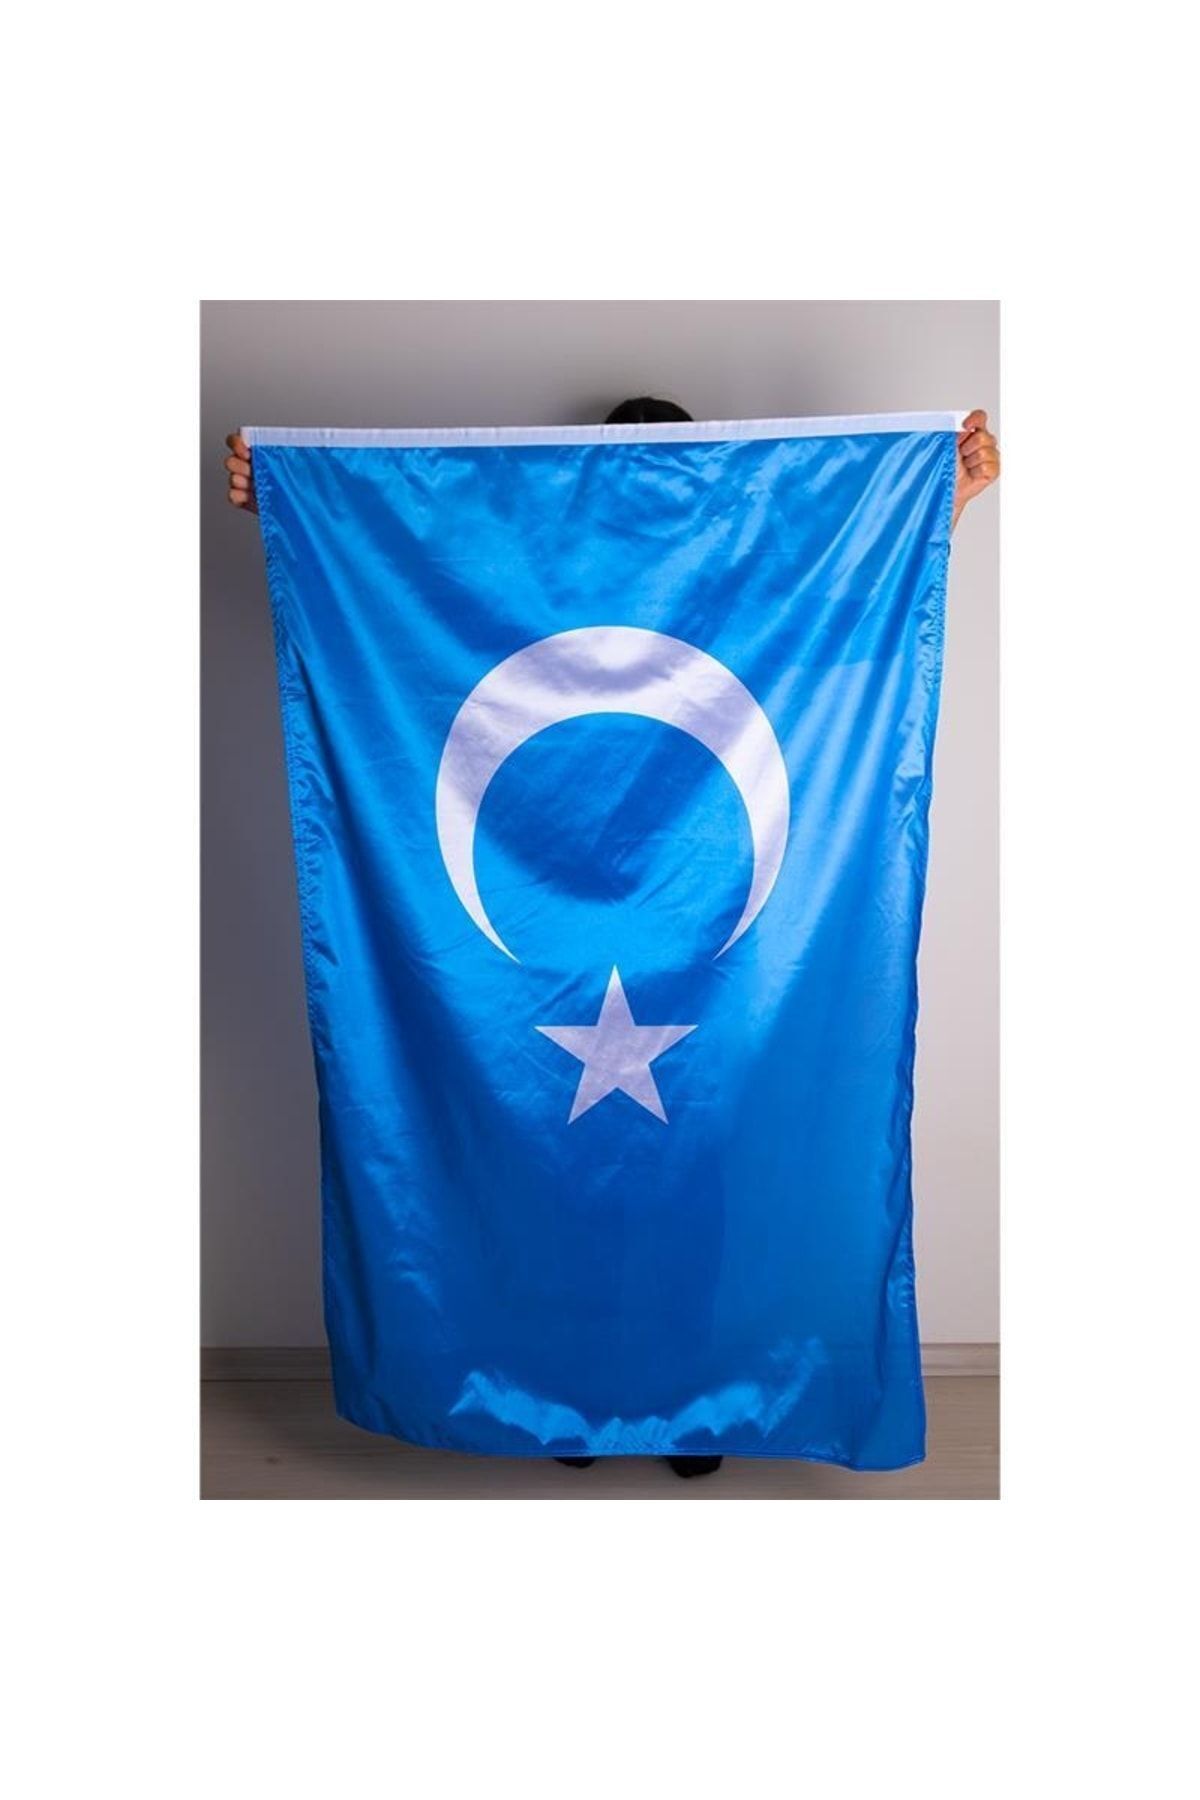 ZC Bayrak 70x105 Doğu Türkistan Milli Gönder Bayrağı Raşel Kumaş Dijital Baskı